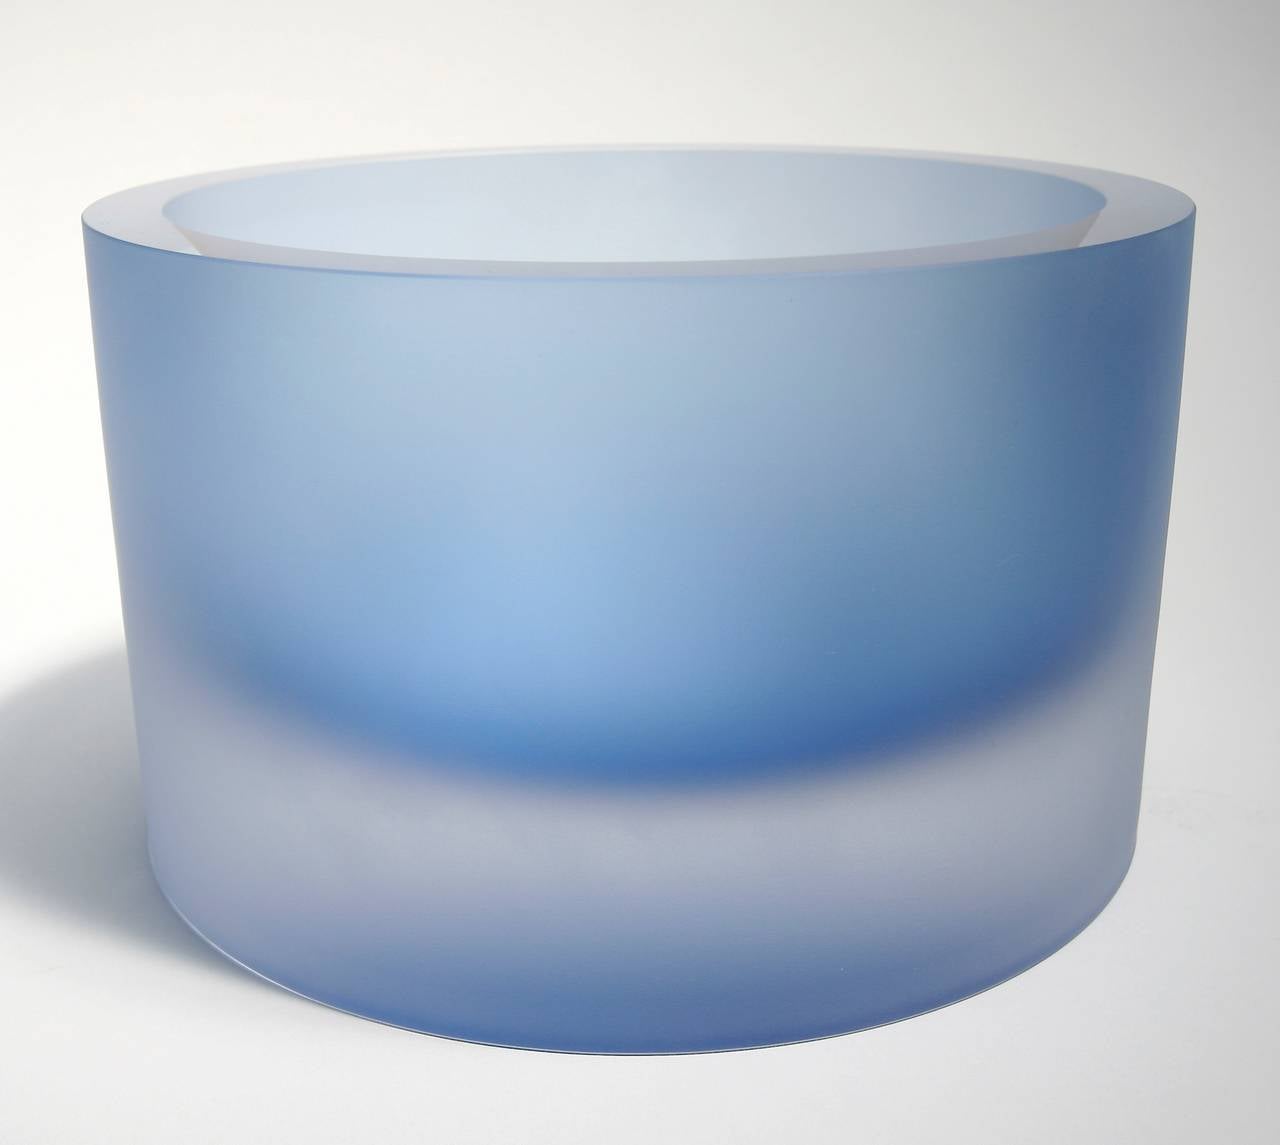 Grand bol en verre valenta Anna Torfs en bleu d'eau avec finition sablée. Disponible dans d'autres couleurs.